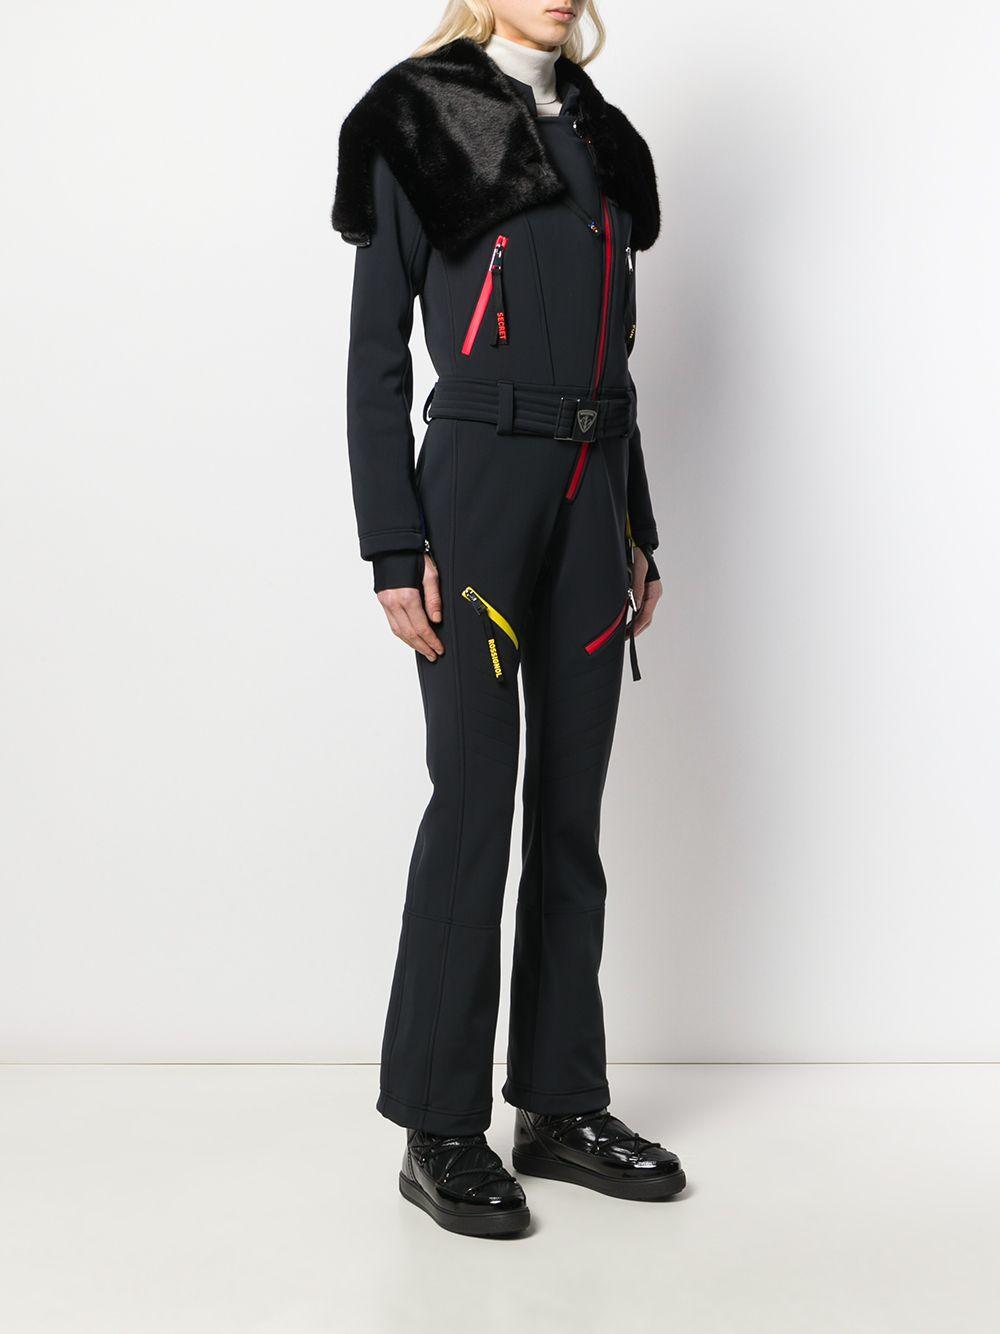 Sale > rossignol ski suit > in stock